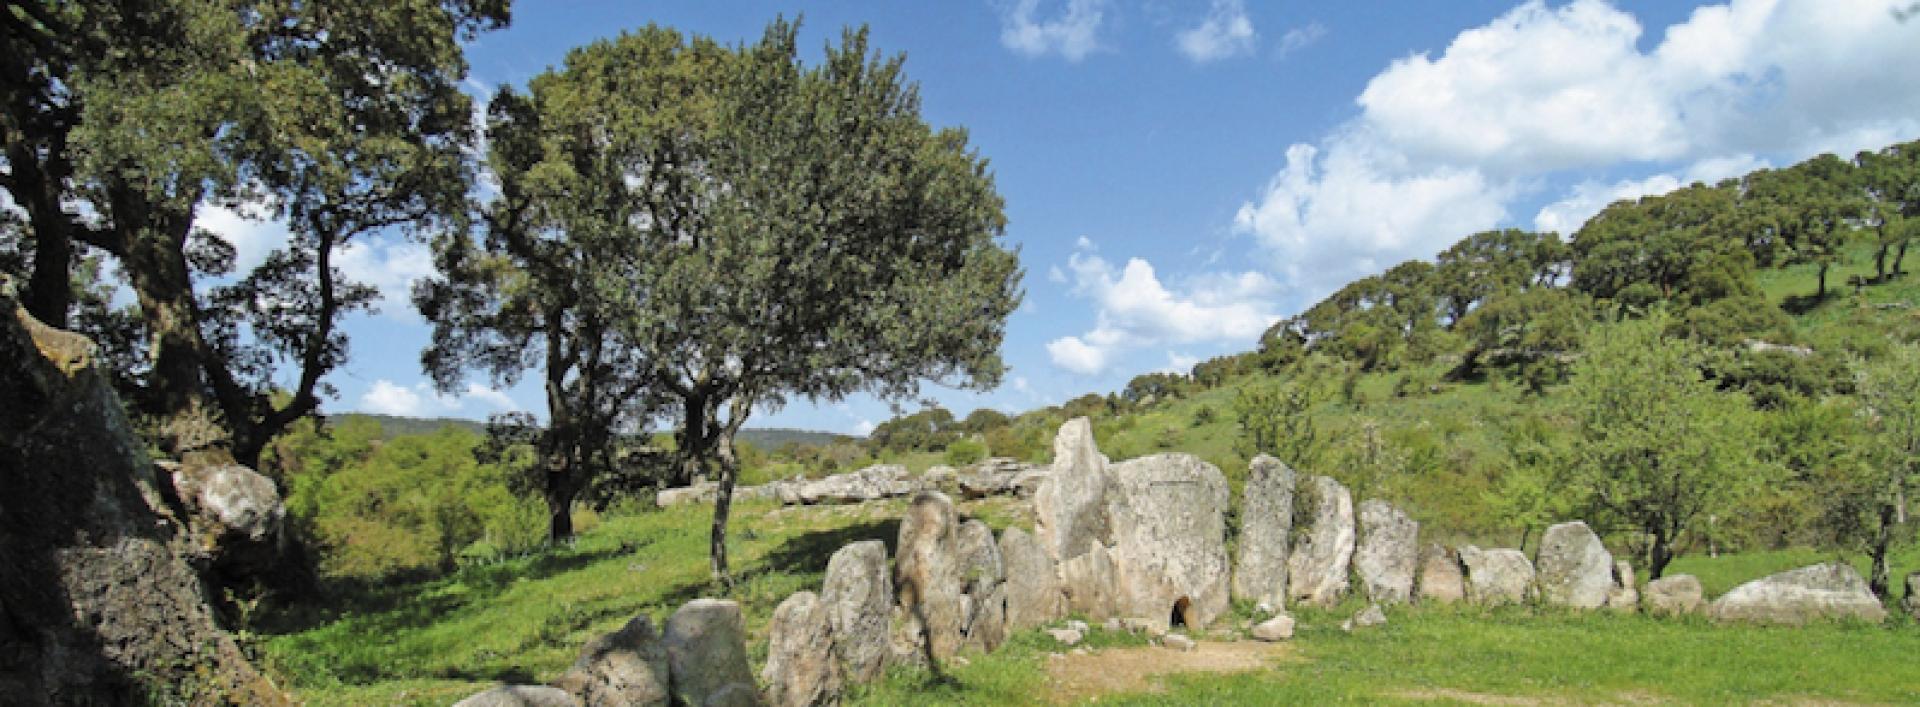 La tomba dei giganti Pascaredda nel comune di Palangianus